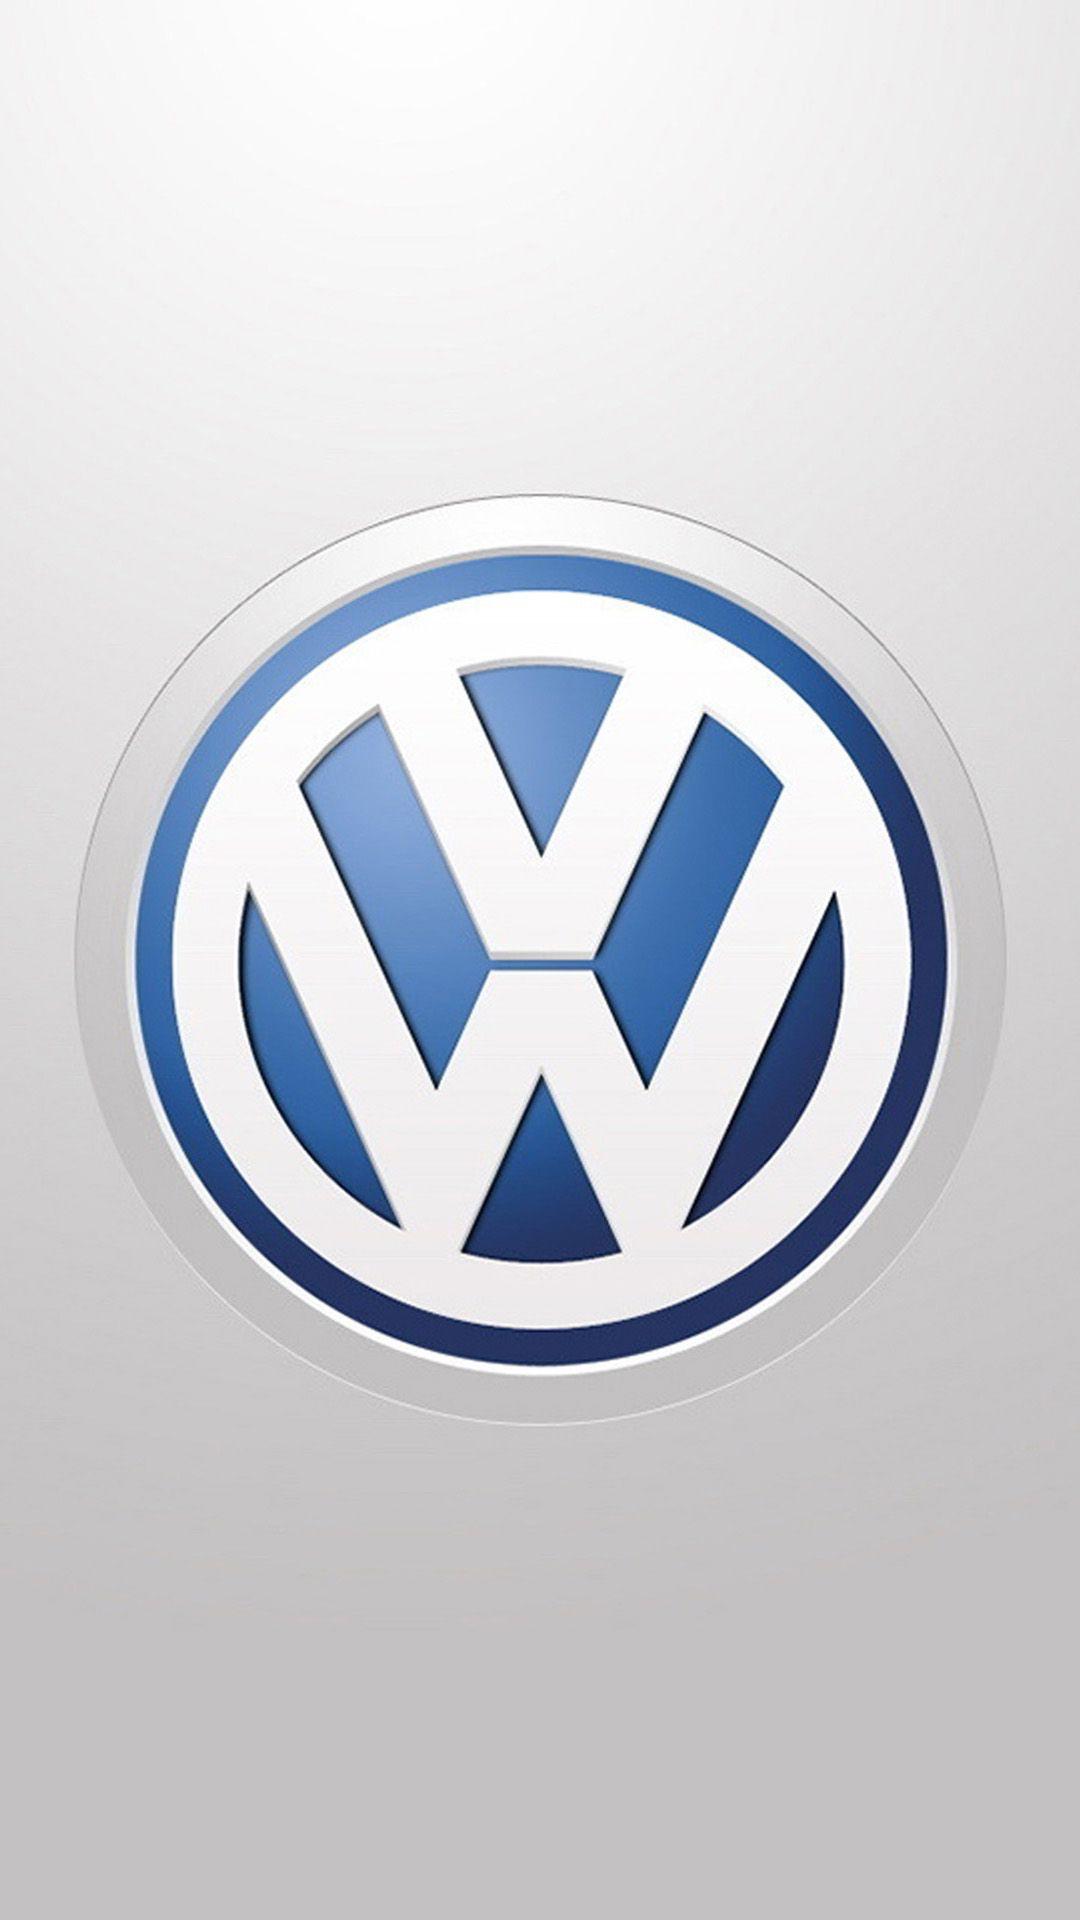 Volkswagen LOGO HD Wallpapers iPhone 6 plus